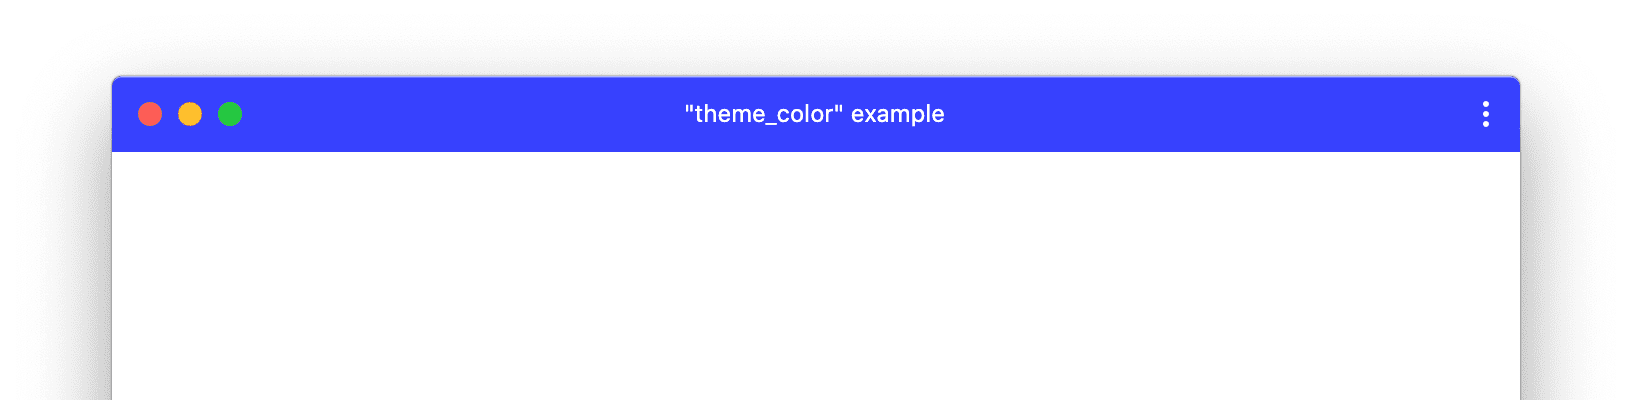 Ejemplo de una ventana de AWP con theme_color personalizado.